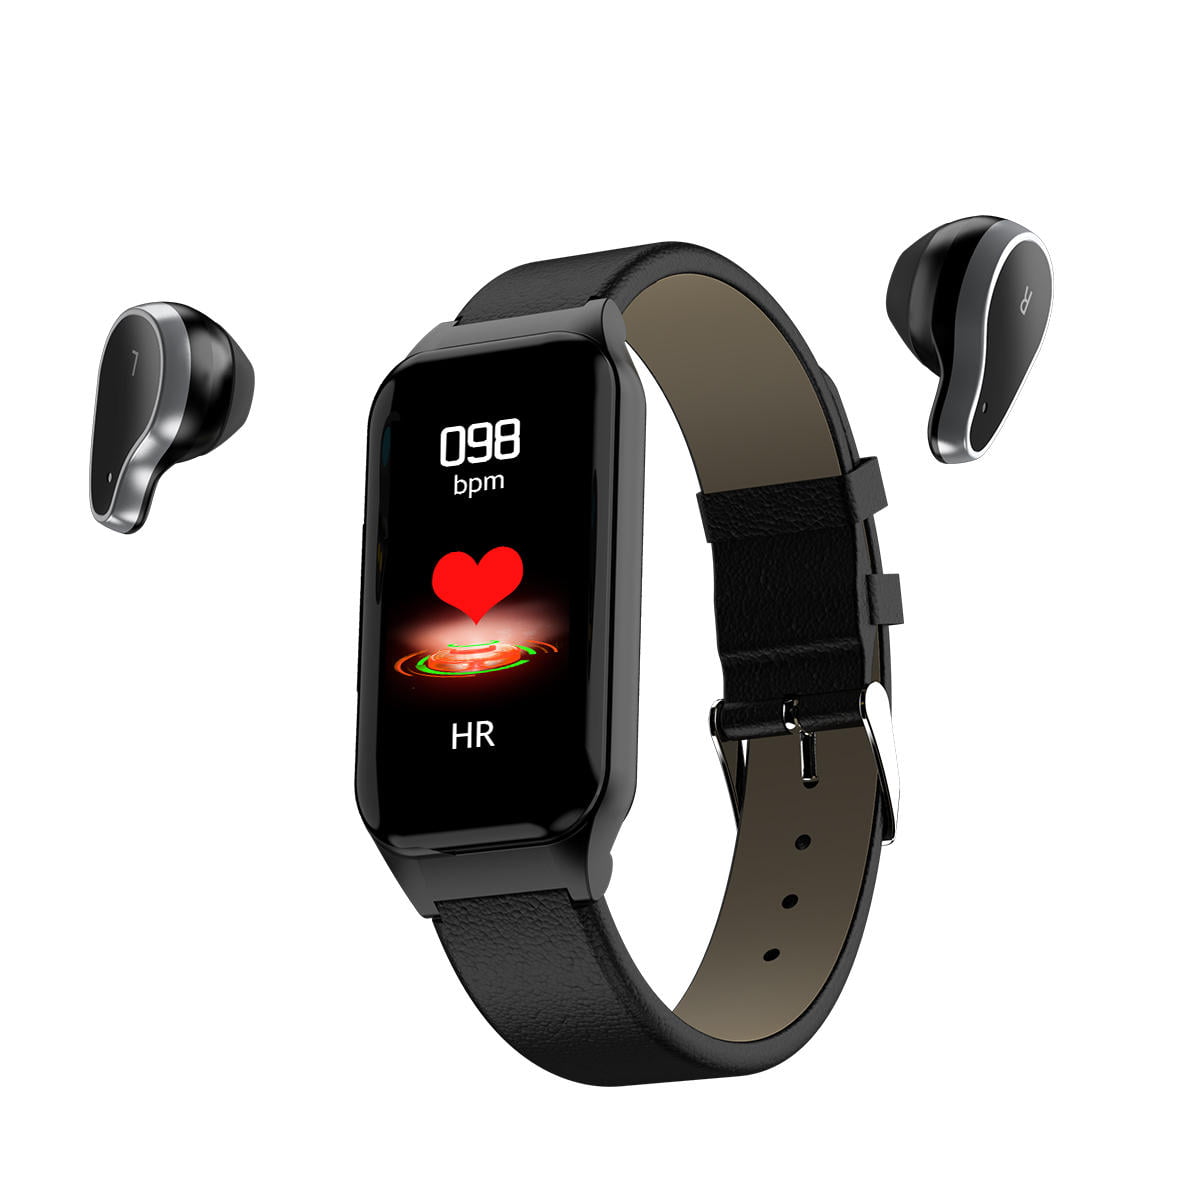 L818 smart watch bt5.0 intelligent noise reduction wireless earphone wristband (26)